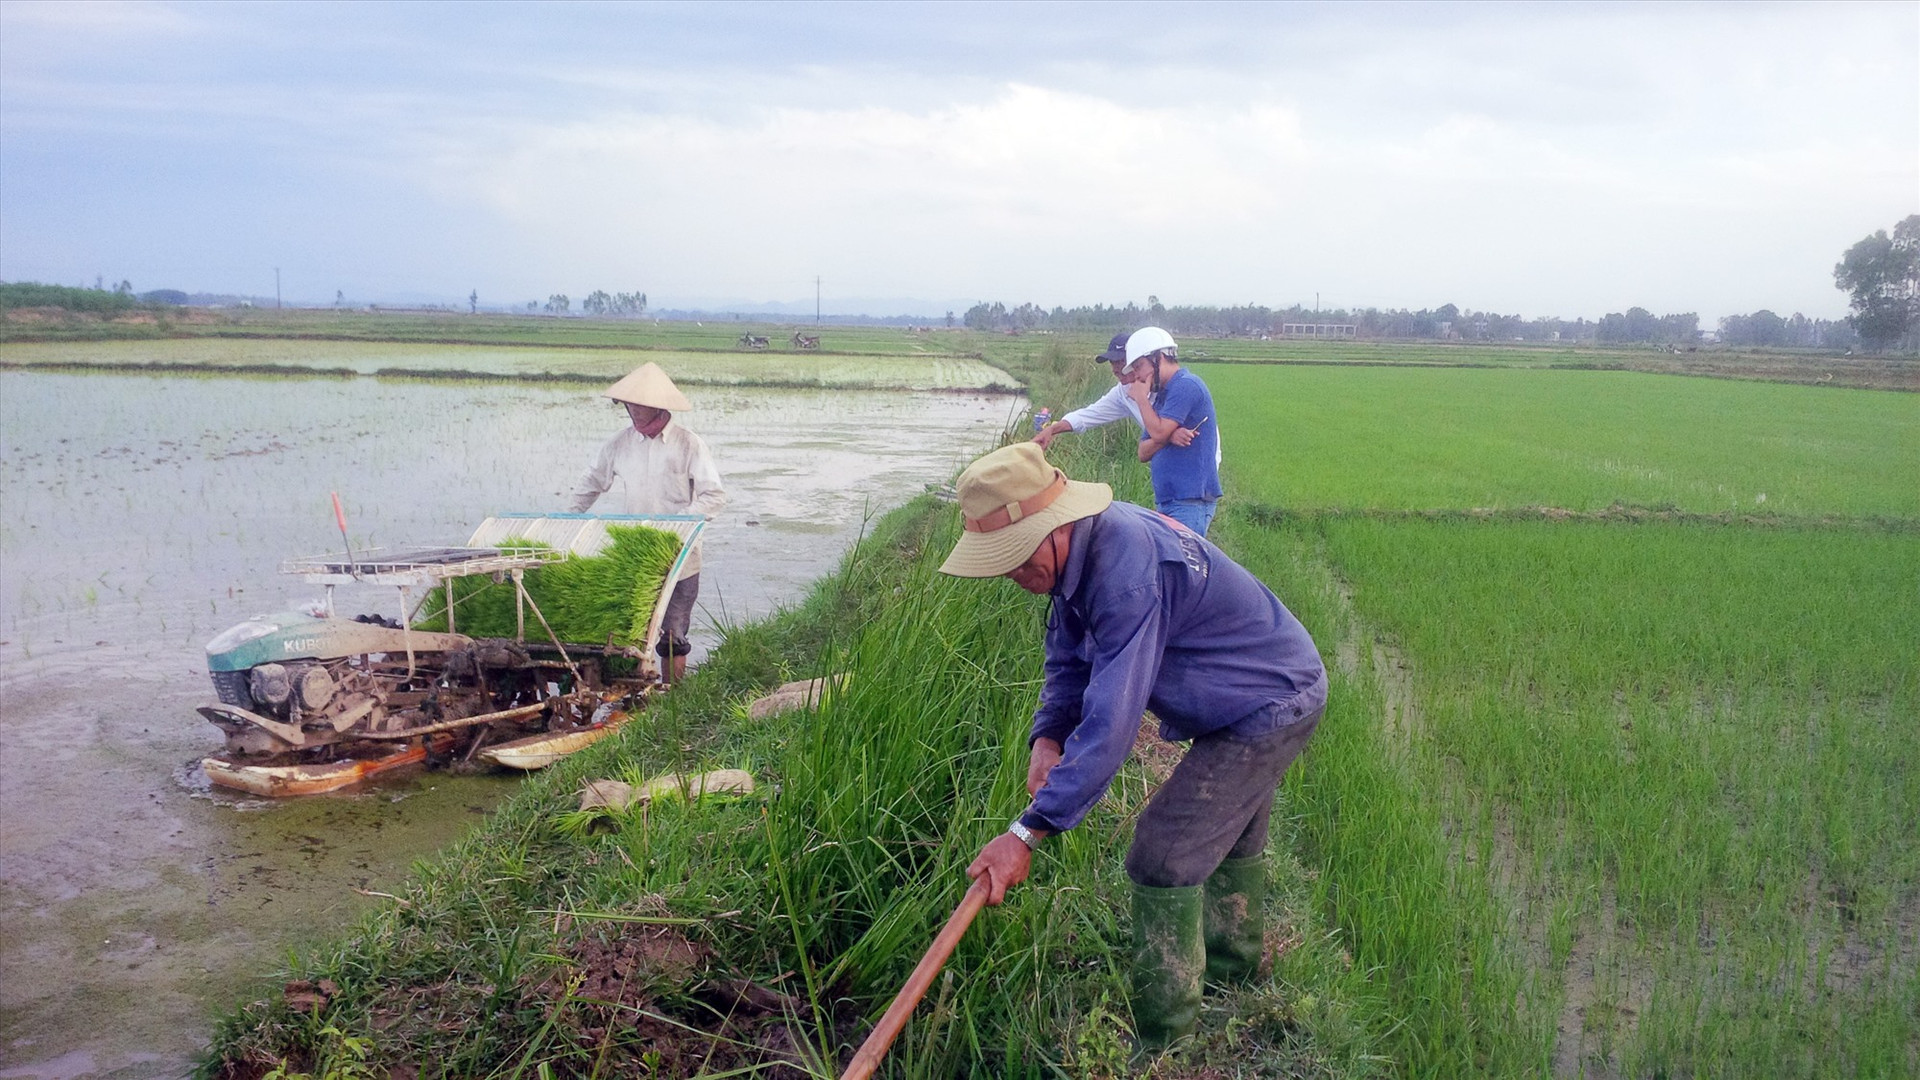 Nhanh chóng hiện đại hóa nền sản xuất nông nghiệp là một trong những mục tiêu của Quảng Nam trong thời gian tới. Ảnh: H.Q